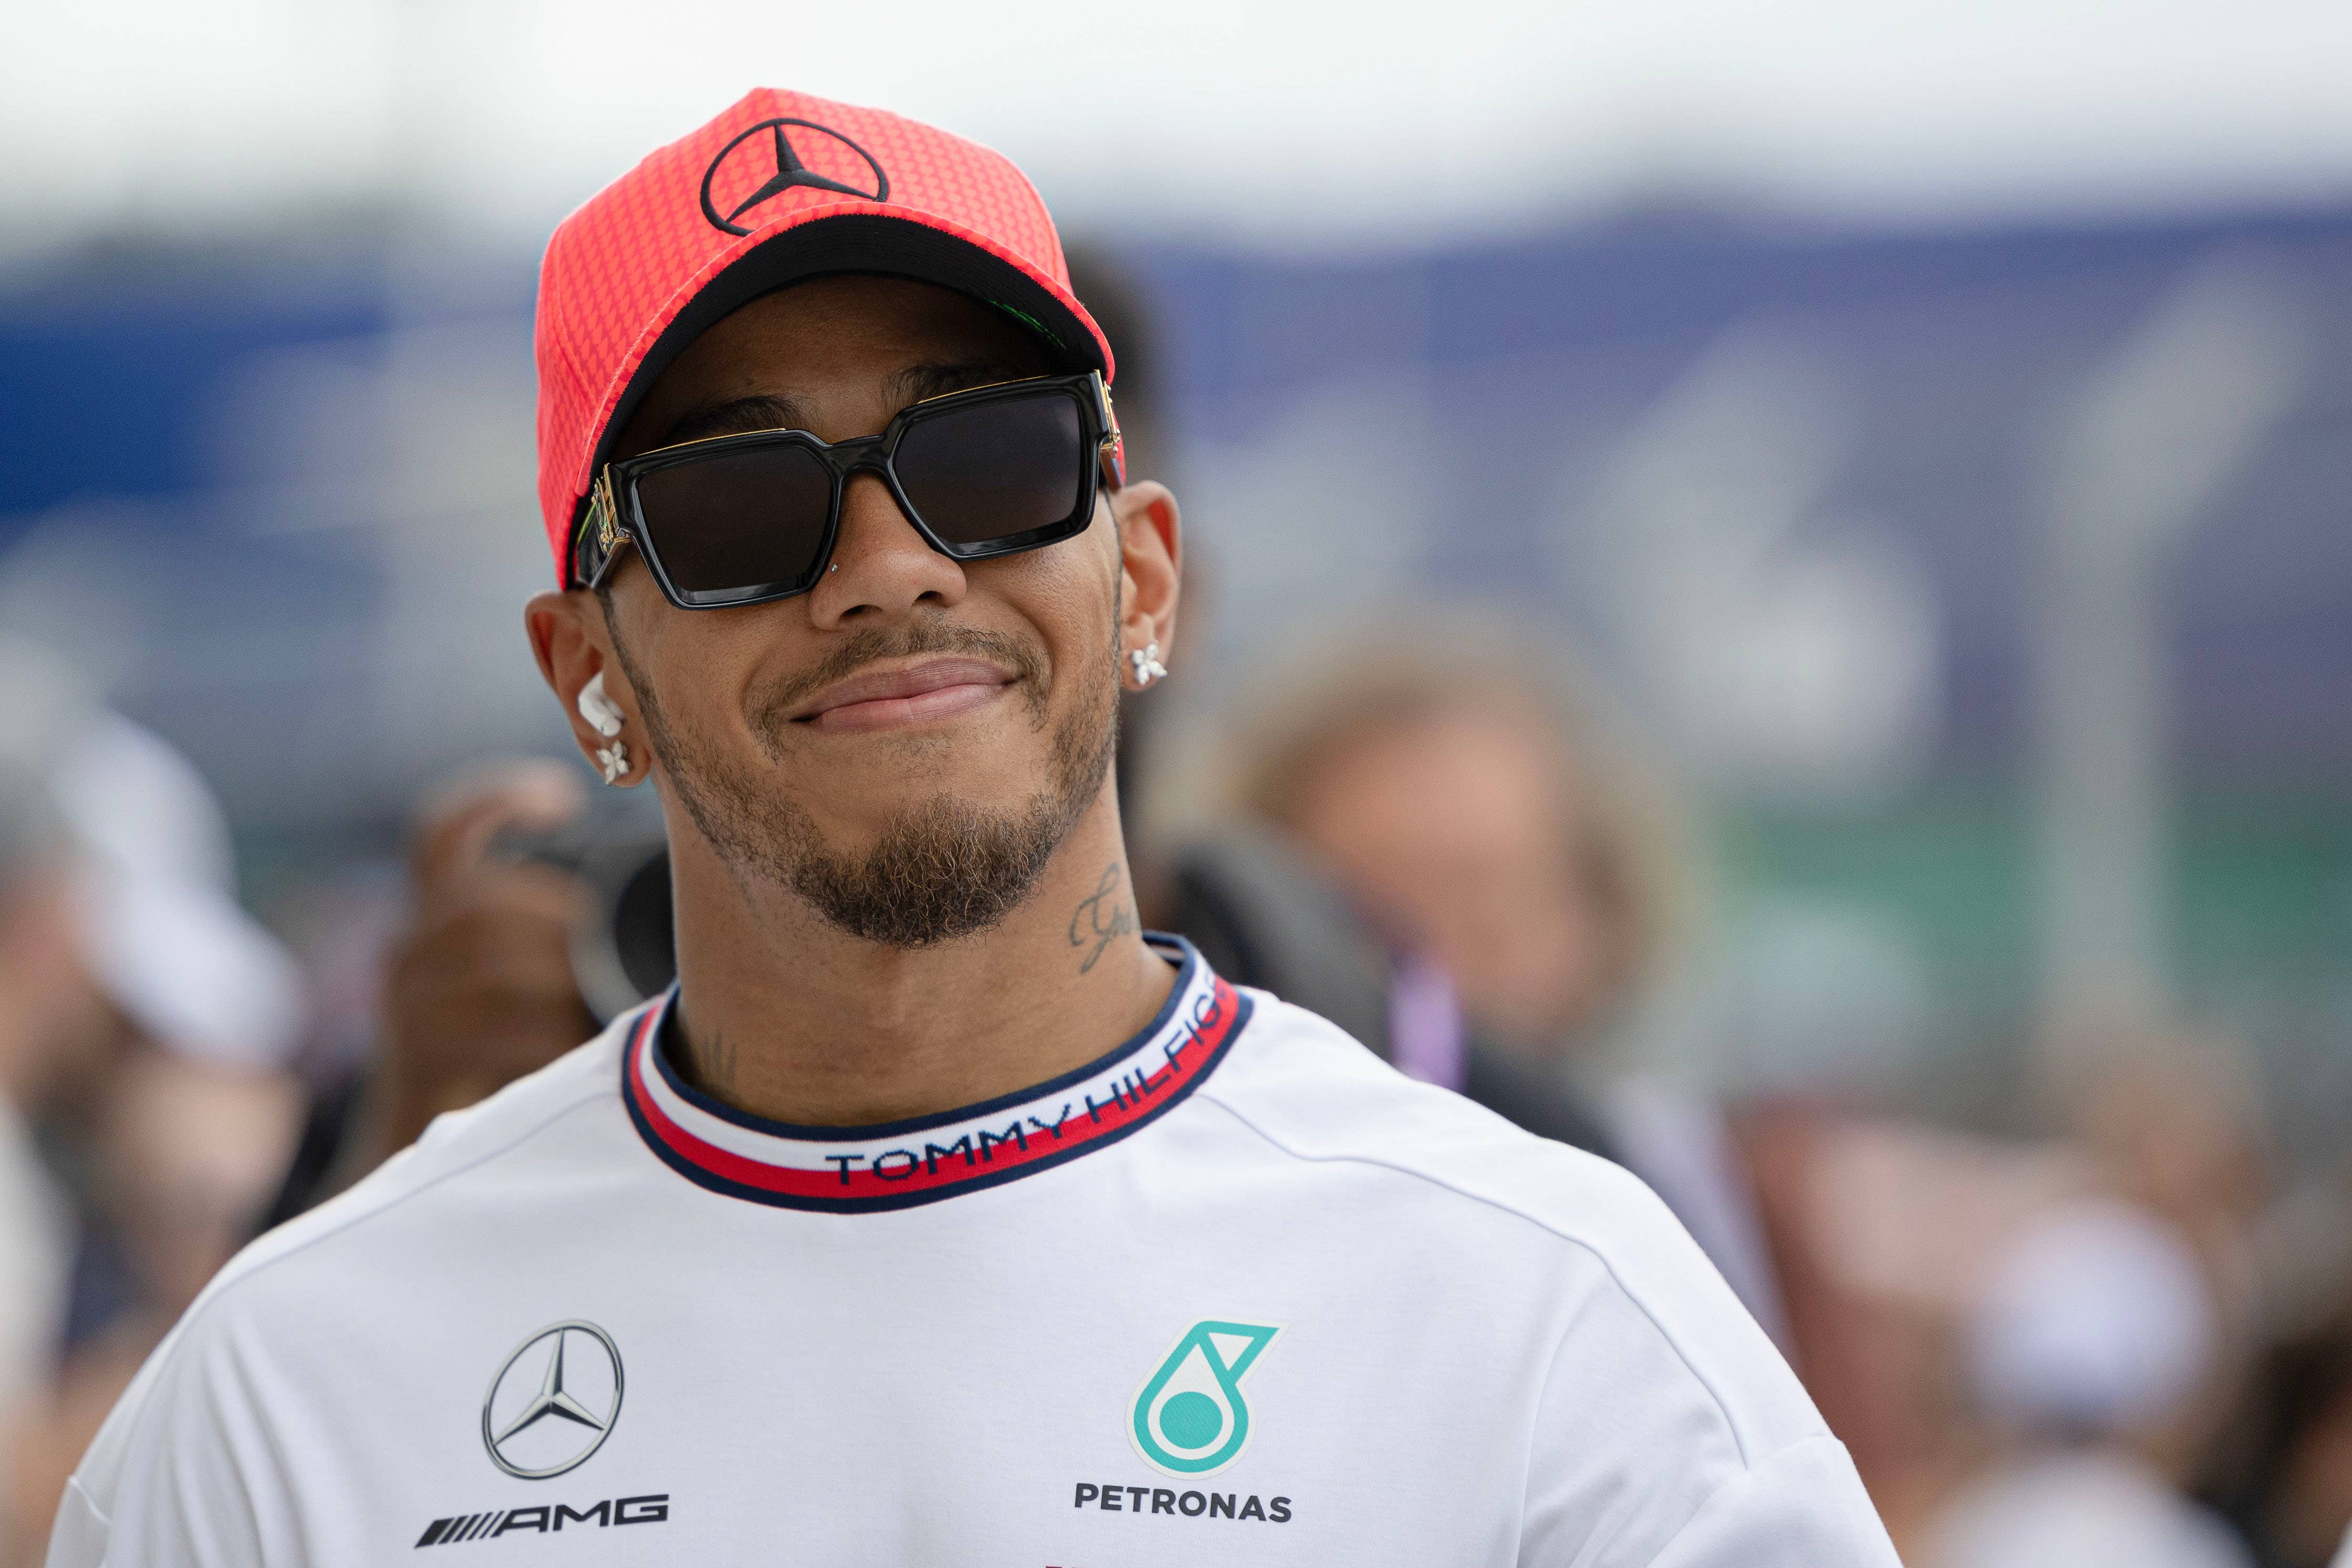 Lewis Hamilton at Miami GP